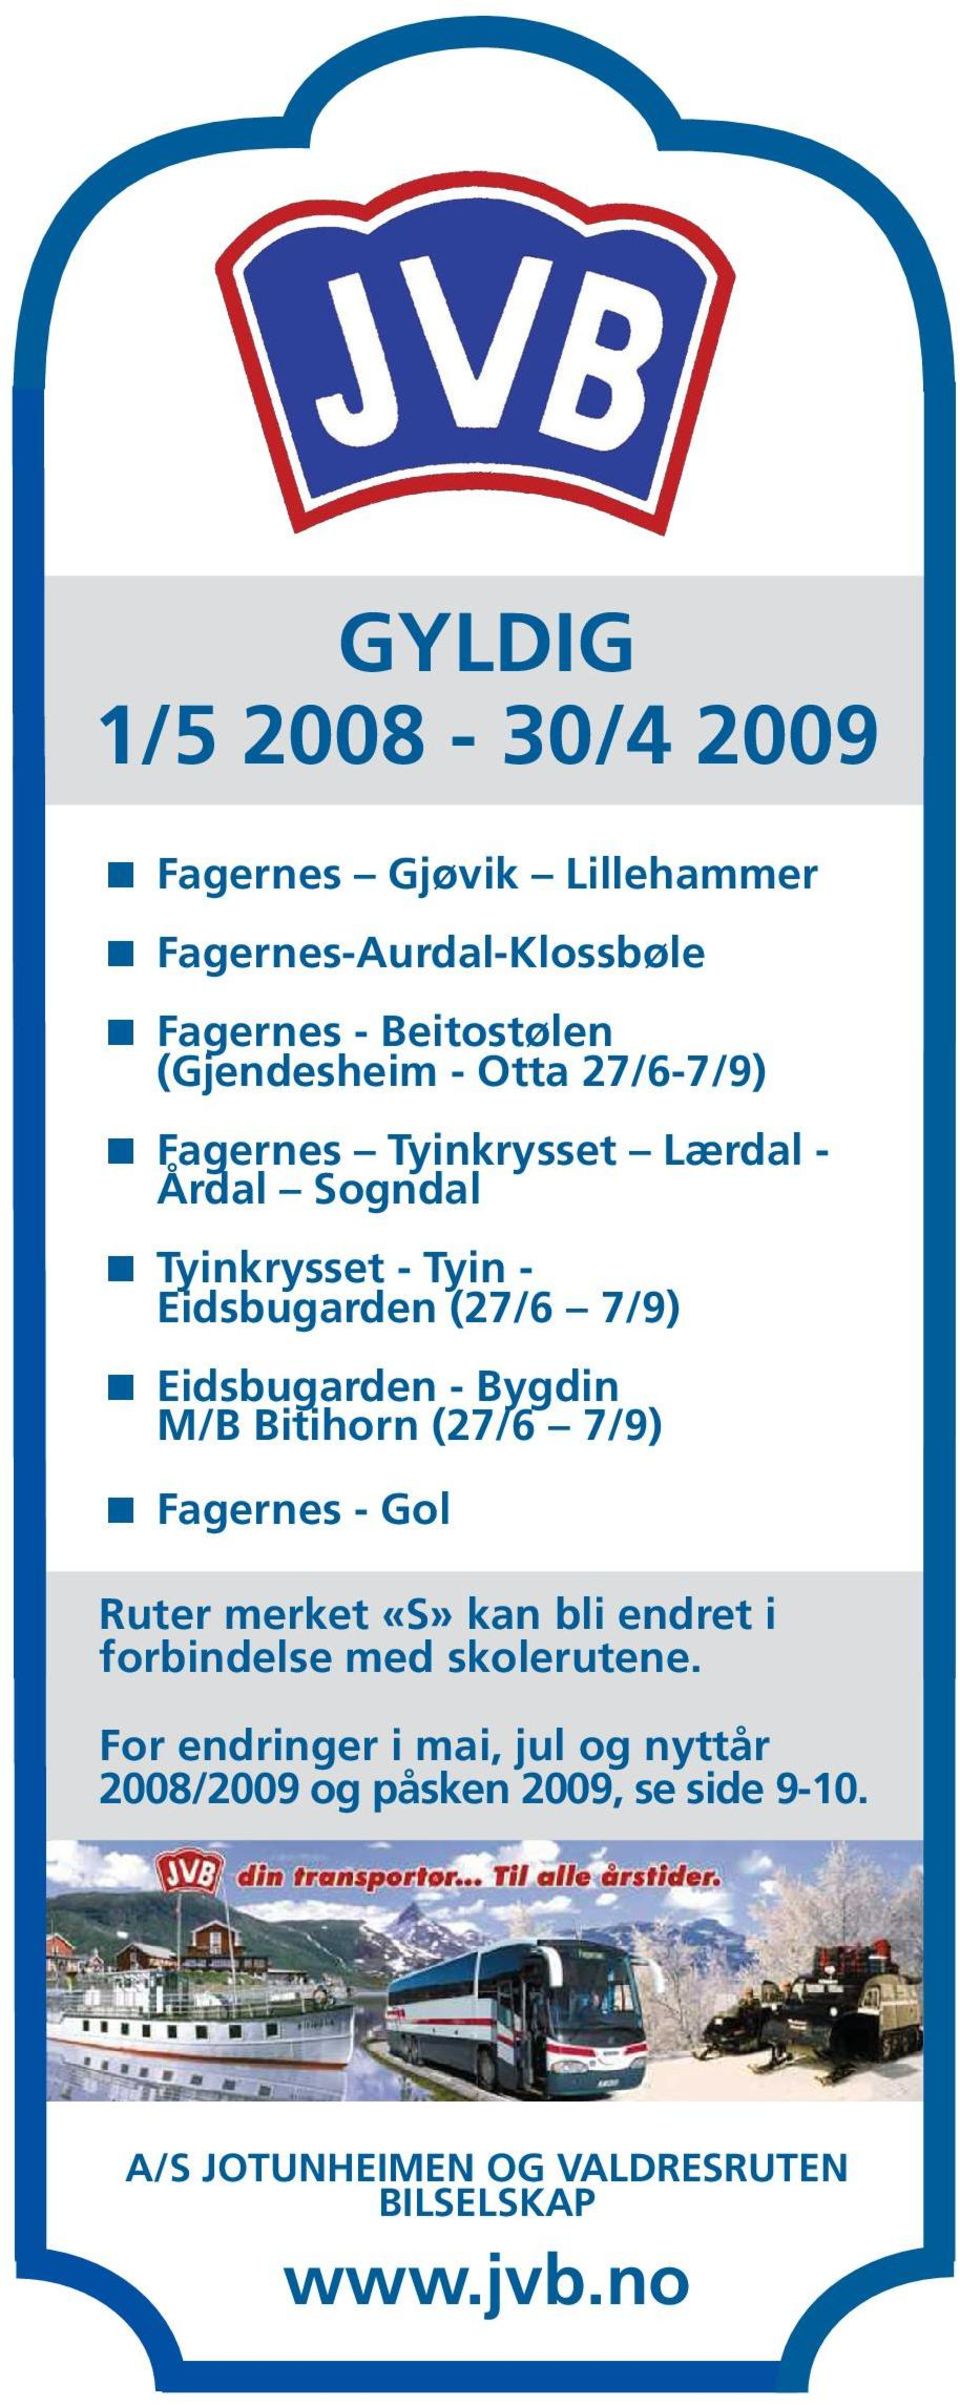 Bygdin M/B Bitihorn (27/6 7/9) Fagernes - Gol Ruter merket «S» kan bli endret i forbindelse med skolerutene.